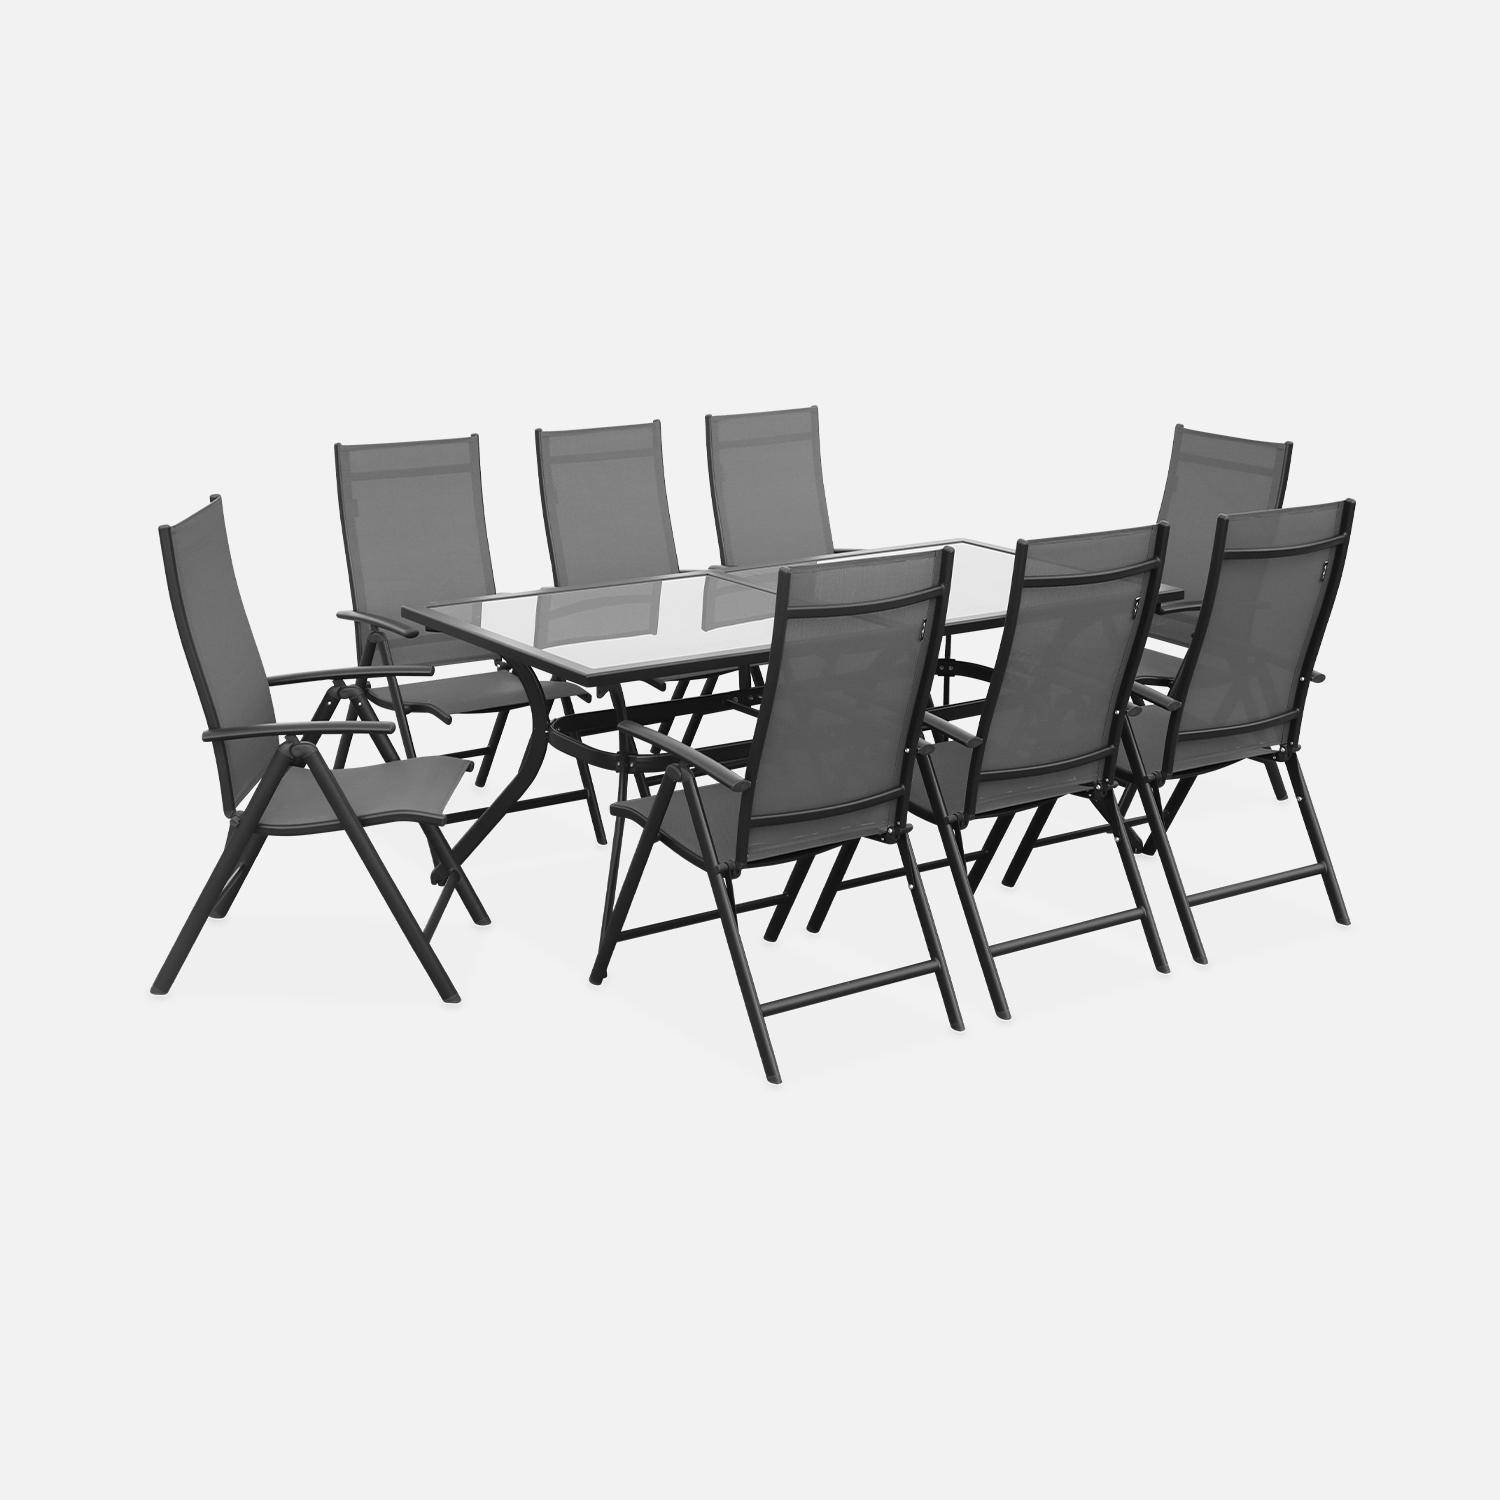 Salon de jardin en aluminium et textilène - Naevia - Gris, Anthracite - 8 places - 1 grande table rectangulaire, 8 fauteuils pliables Photo5